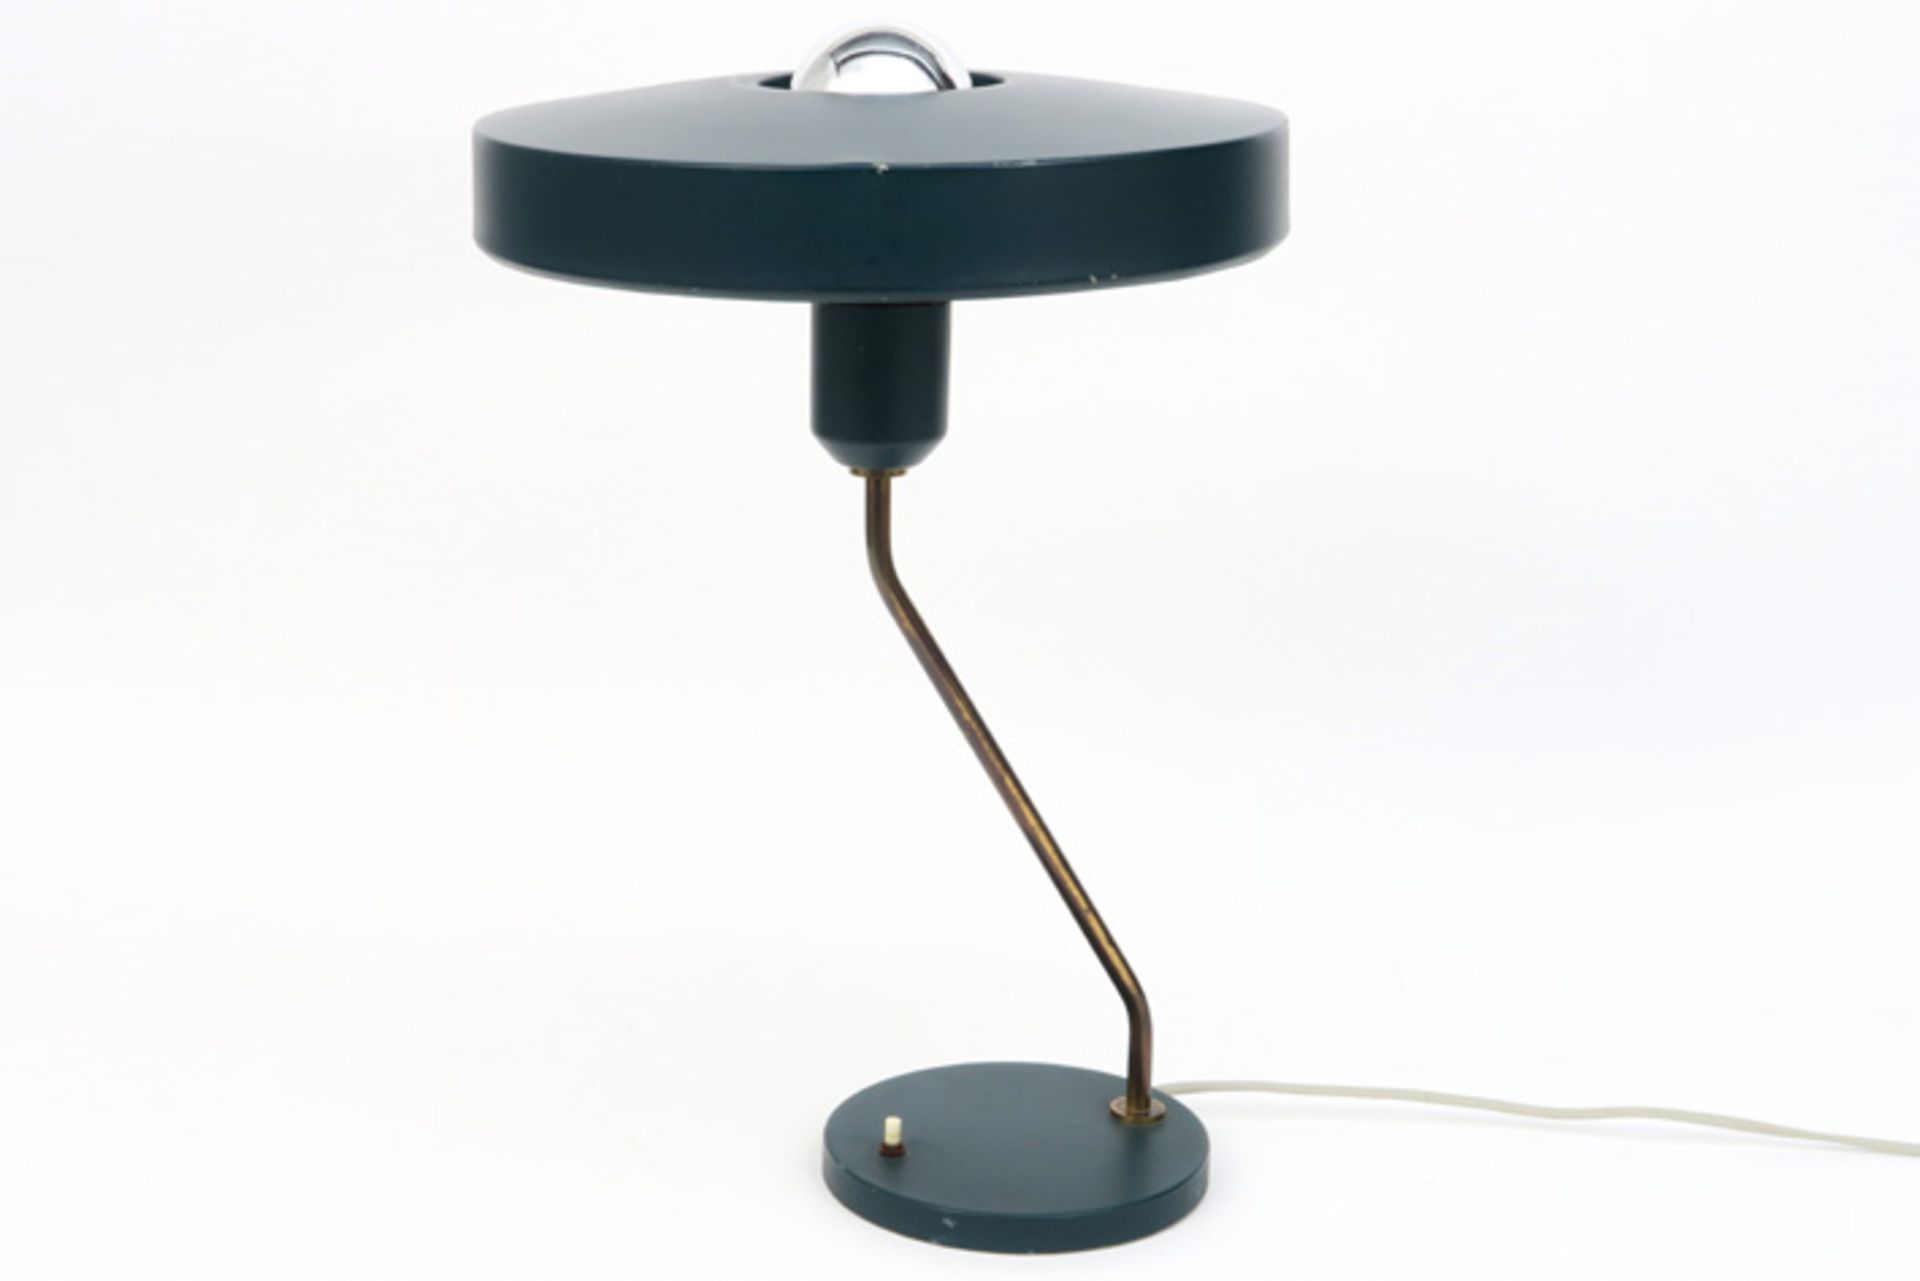 Louis Kalff "model Z" desk lamp dd 1955 by Philips||LOUIS KALFF (1897 - 1976) bureaulamp - model Z o